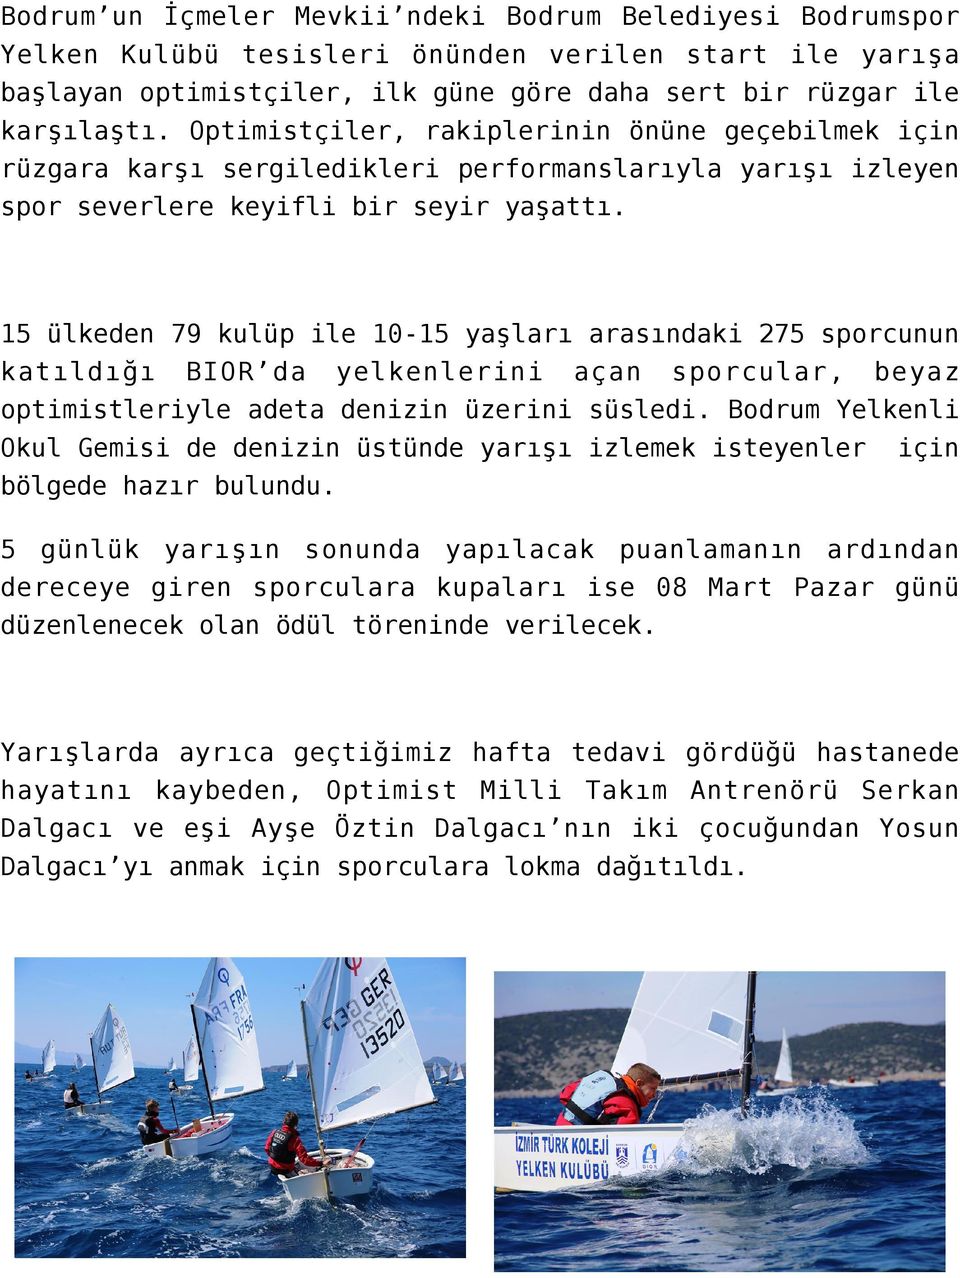 15 ülkeden 79 kulüp ile 10-15 yaşları arasındaki 275 sporcunun katıldığı BIOR da yelkenlerini açan sporcular, beyaz optimistleriyle adeta denizin üzerini süsledi.